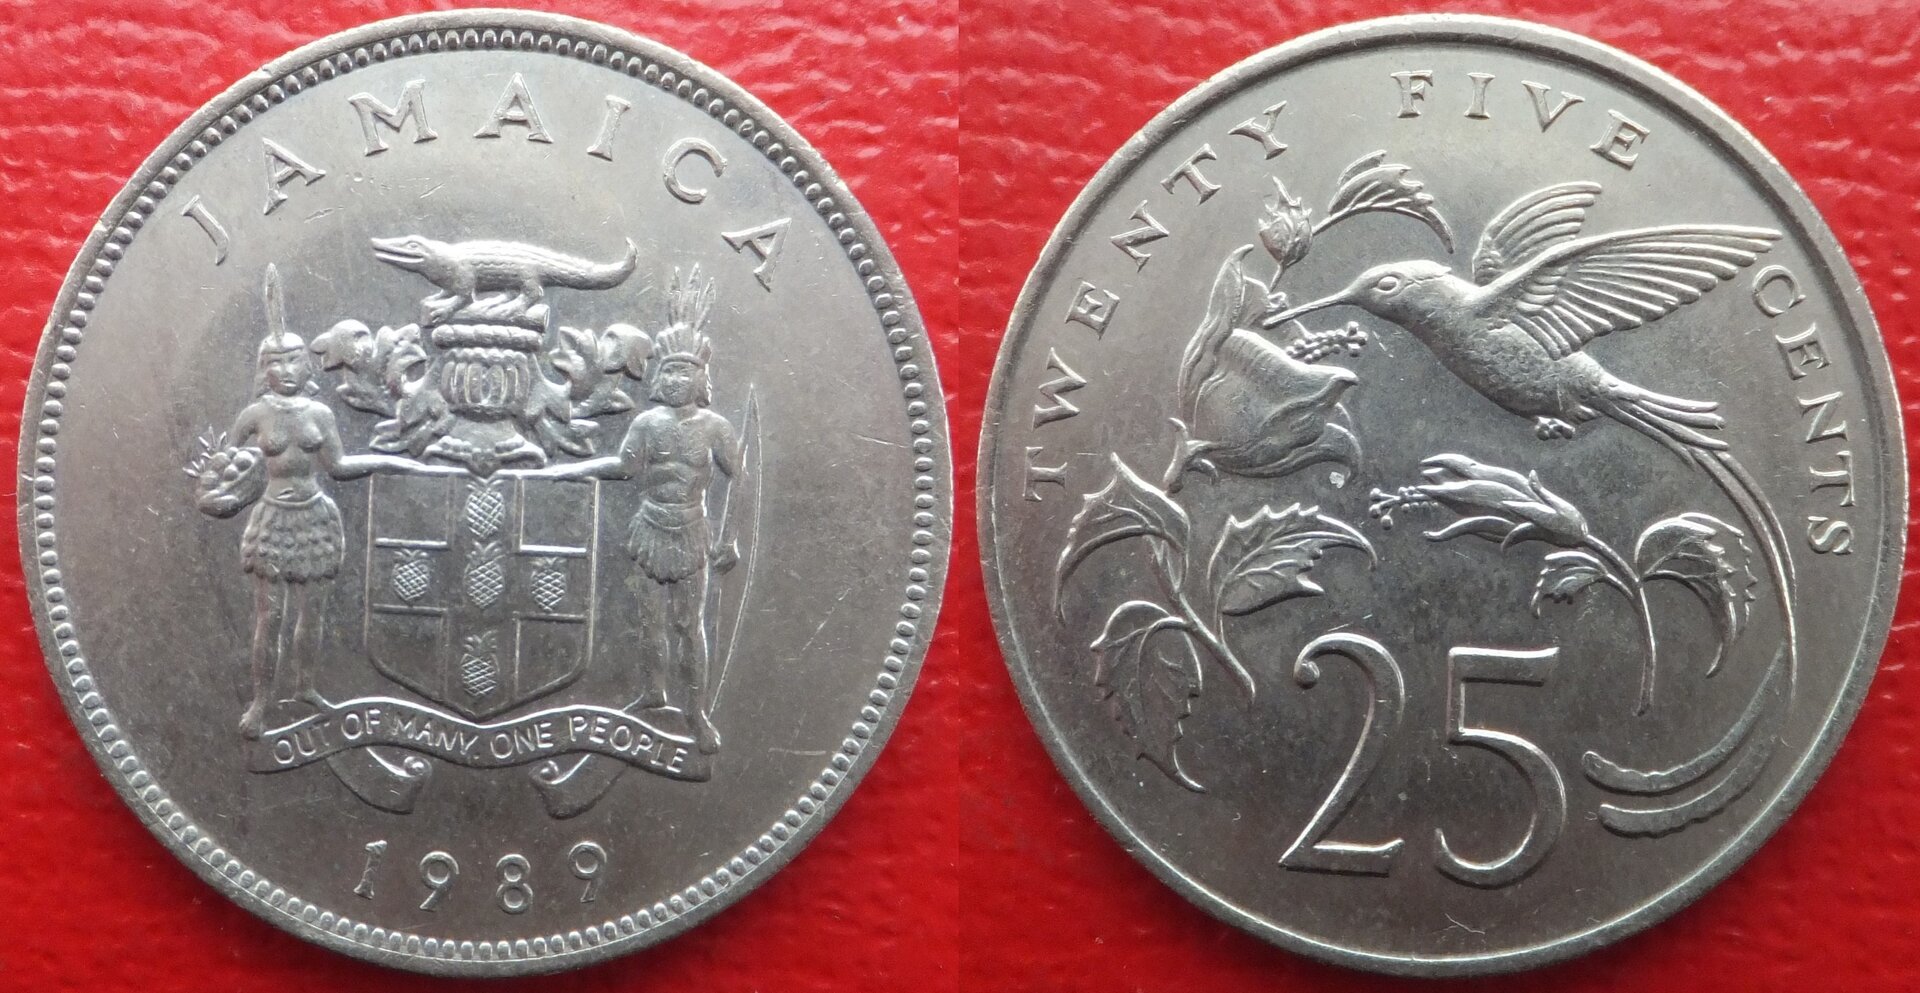 Jamaica 25 cents 1989 (3).jpg